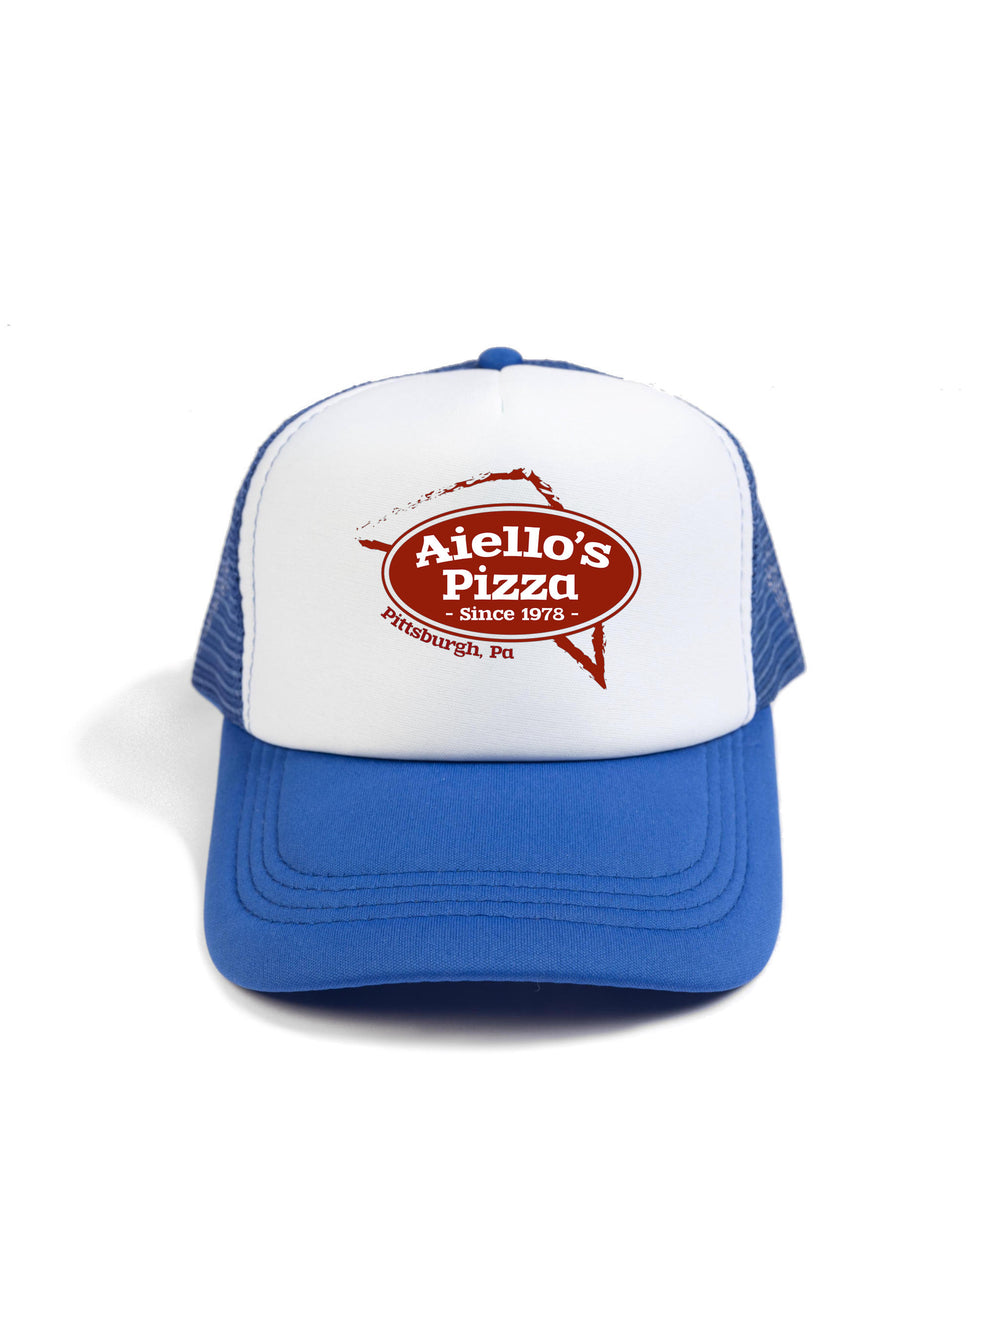 Aiellos Pizza Trucker Hat